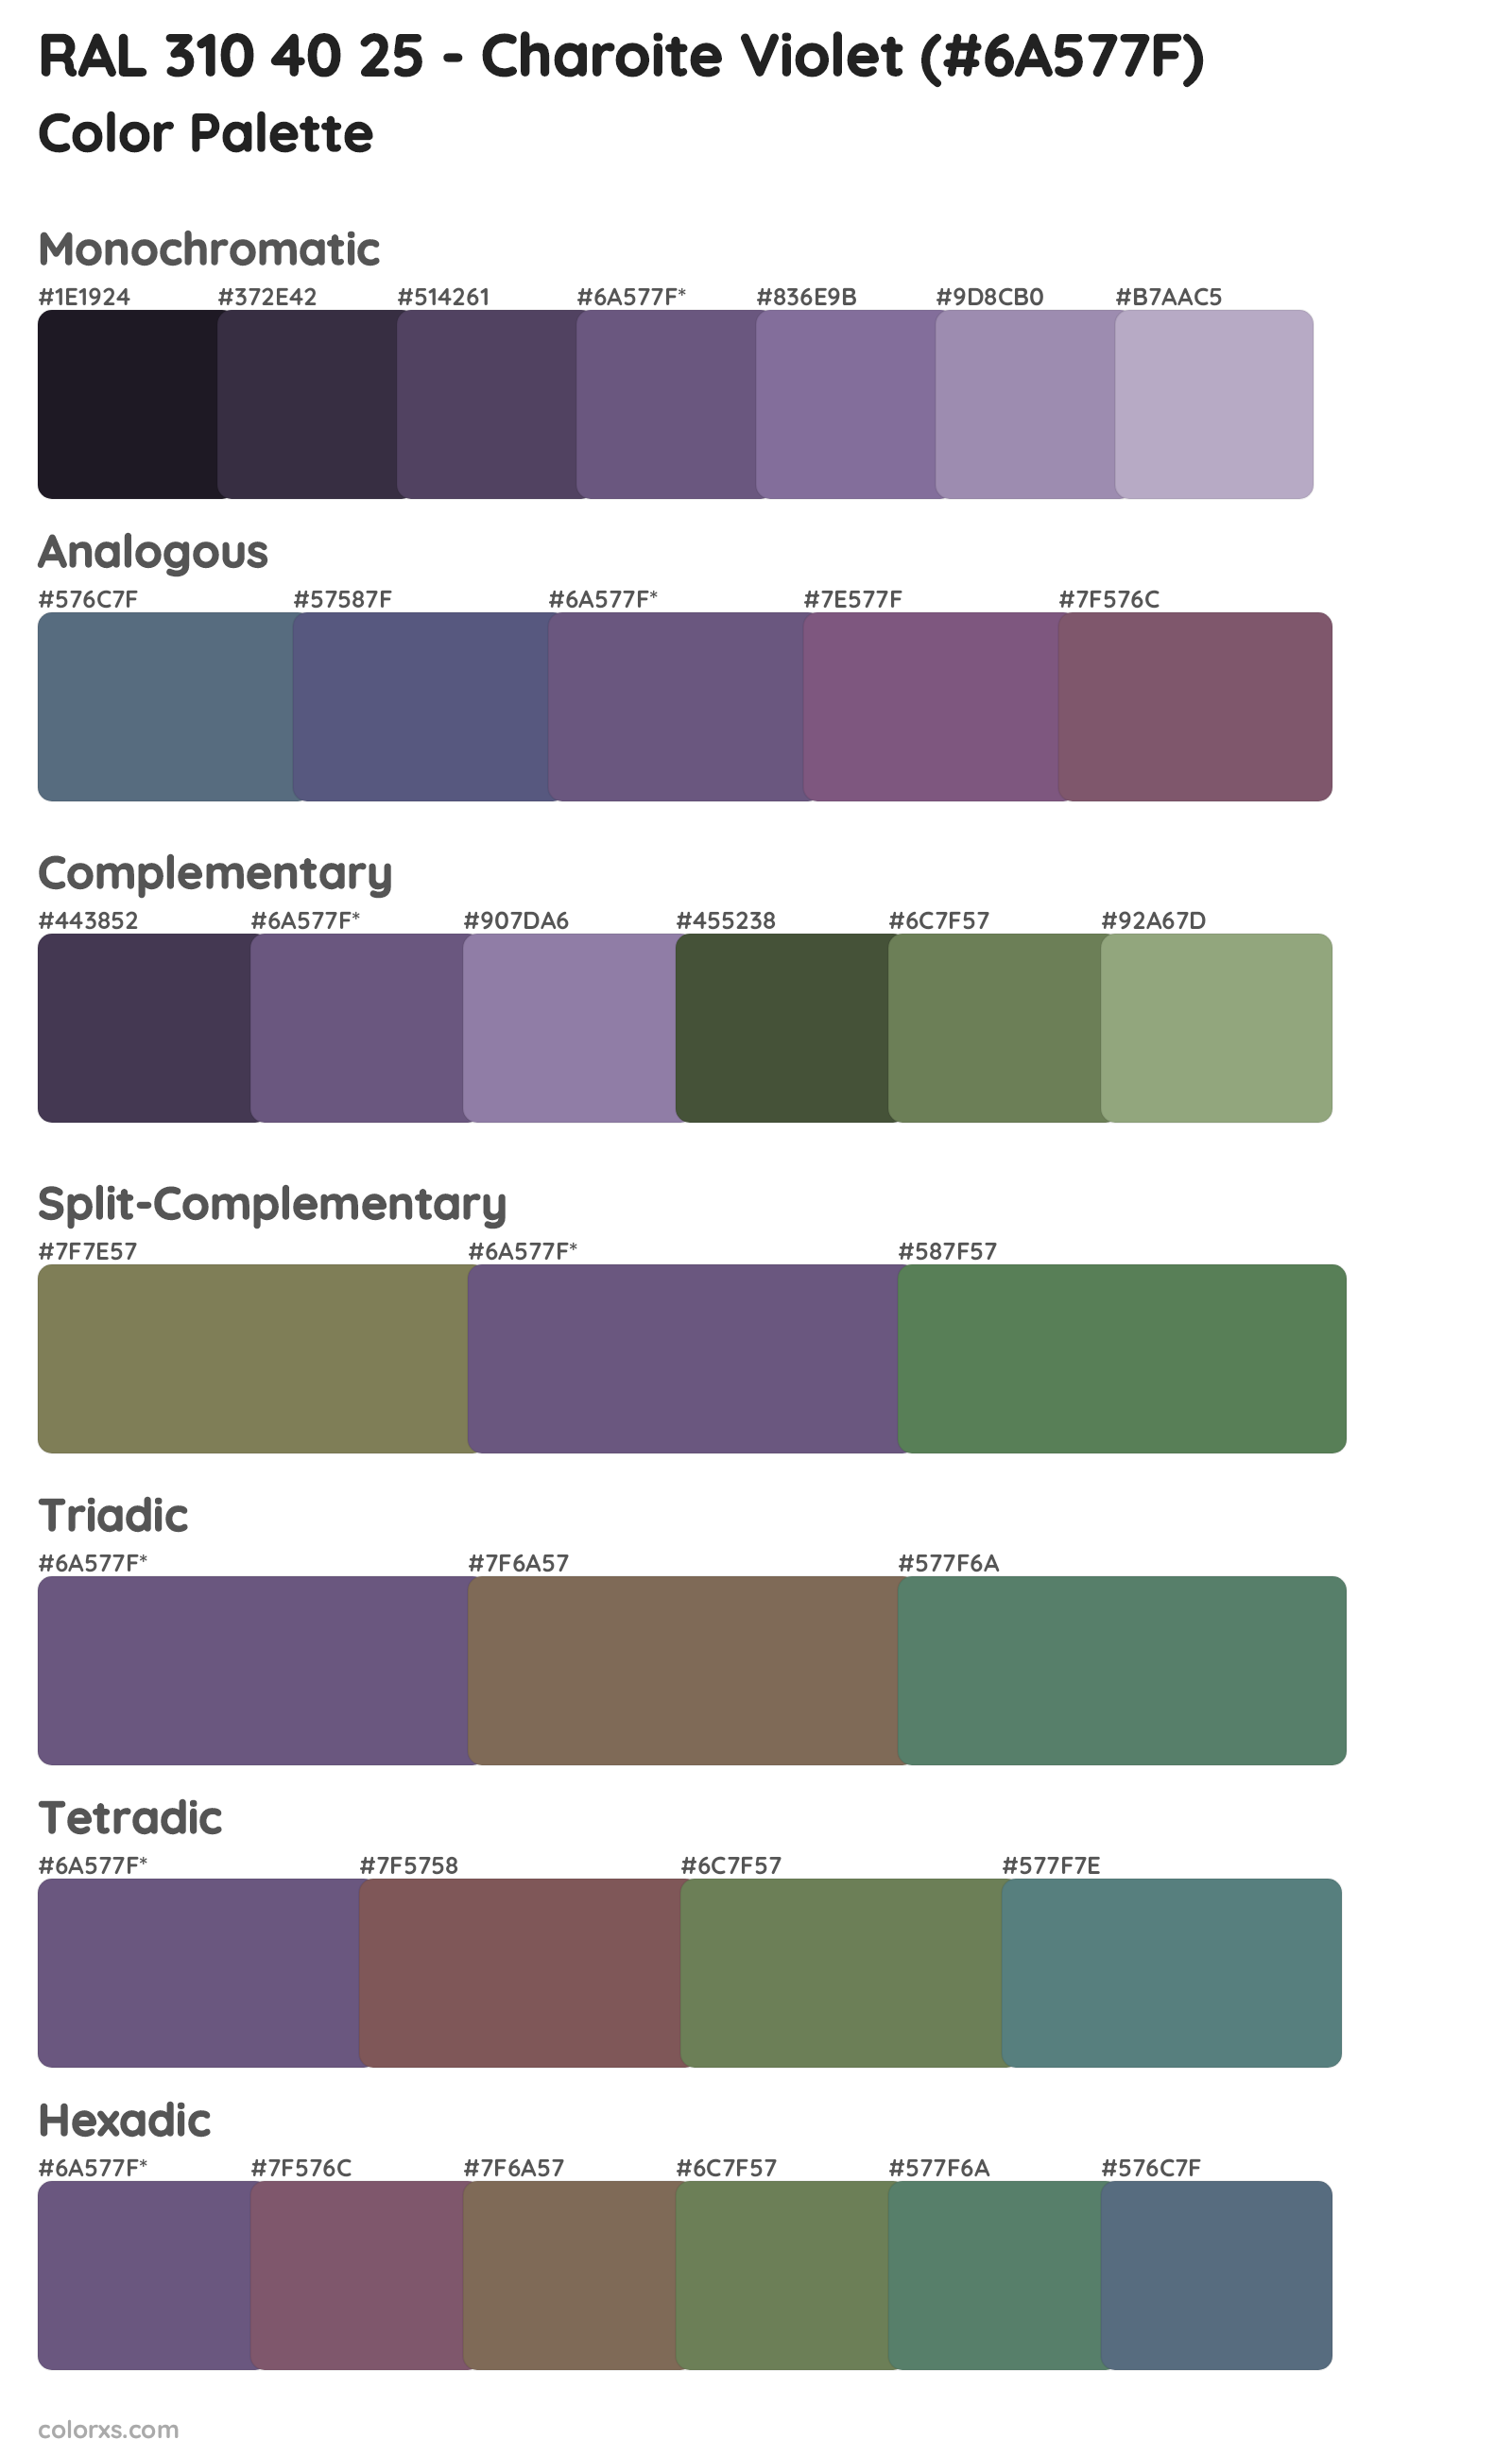 RAL 310 40 25 - Charoite Violet Color Scheme Palettes